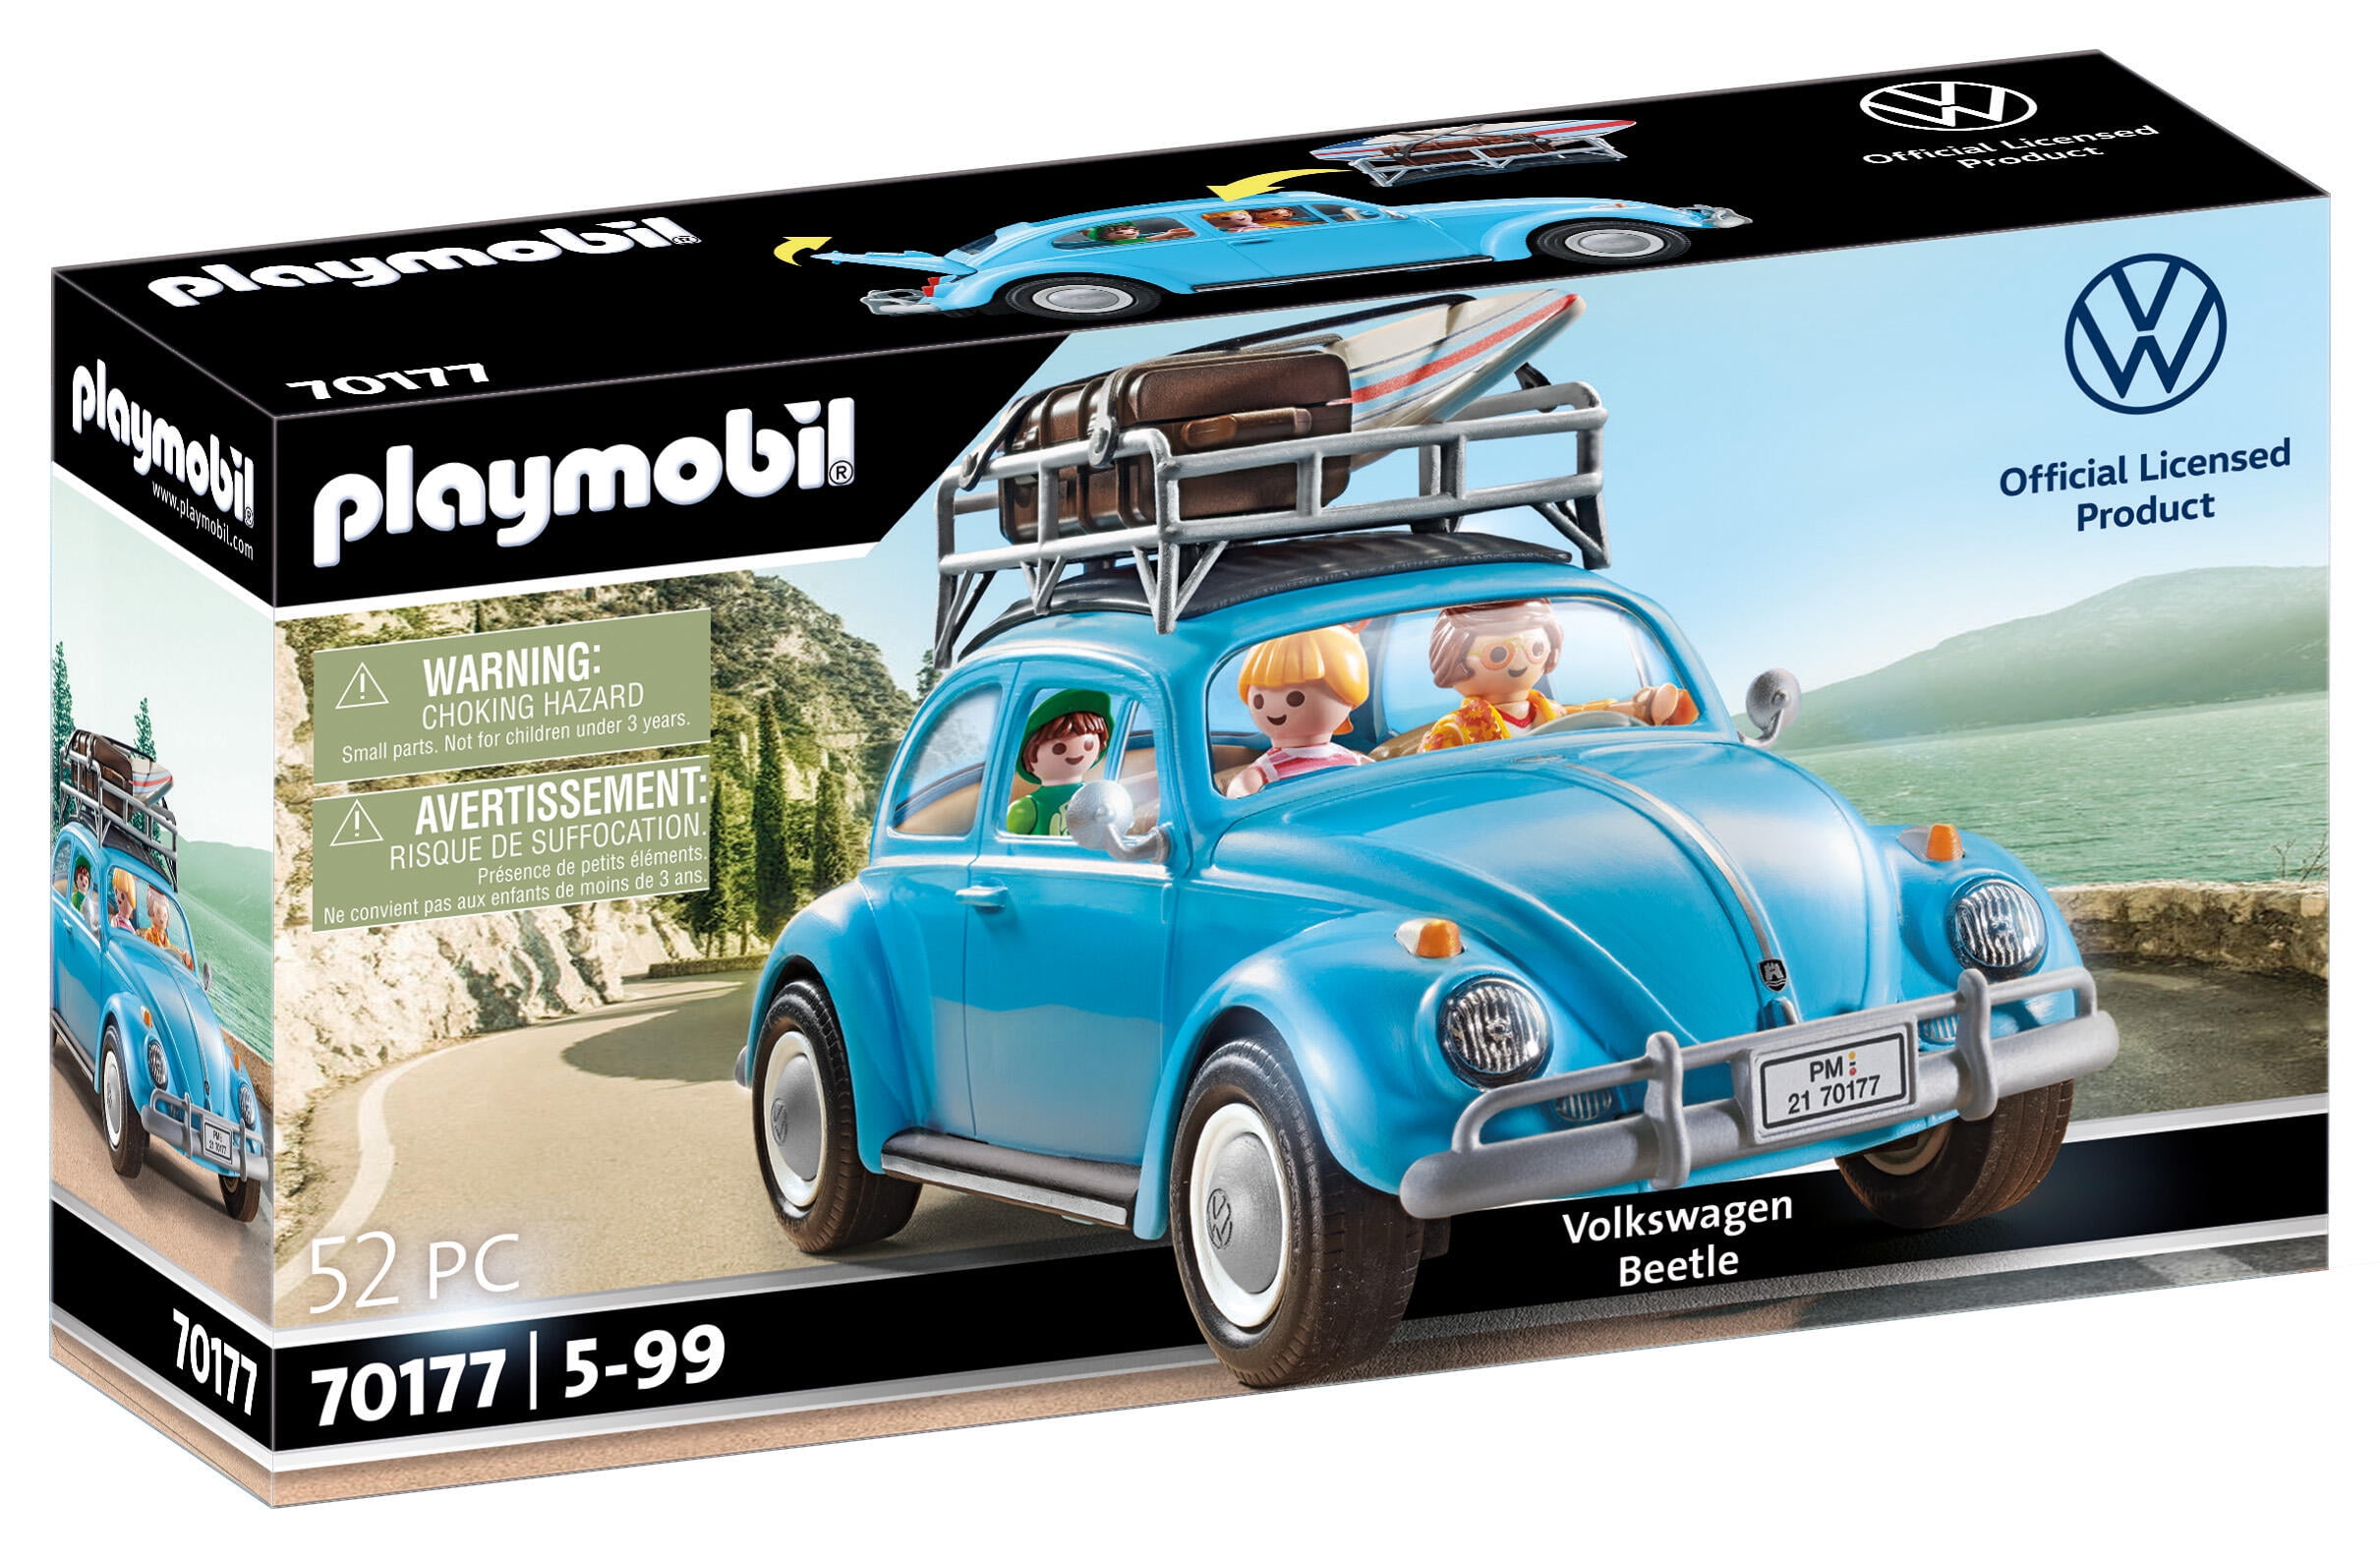 Officially licensed Volkswagen classic camper van magnet 